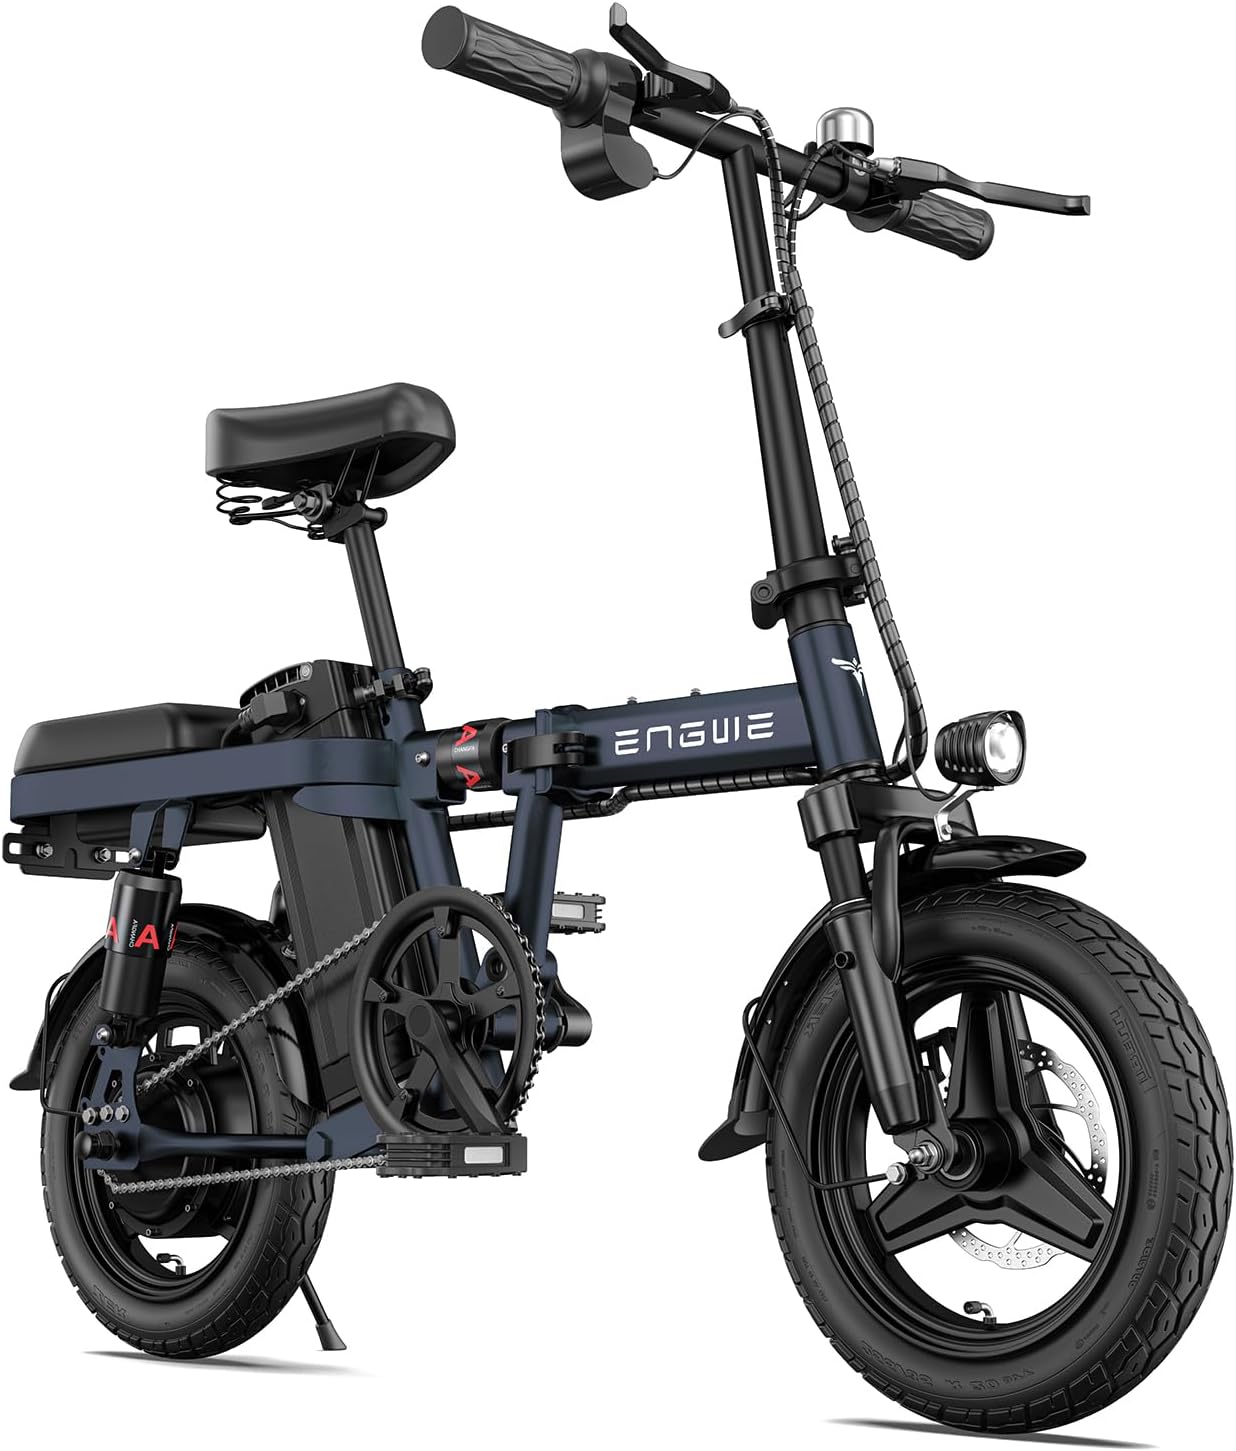 14" skladací e-bike skladacie bicykle elektrický bicykel, pneumatiky e-bike skladací bicykel, 48V / 10Ah batérie dojazd až 50 km, skladací mestský e-bike pre dospelých, muži ženy modrá